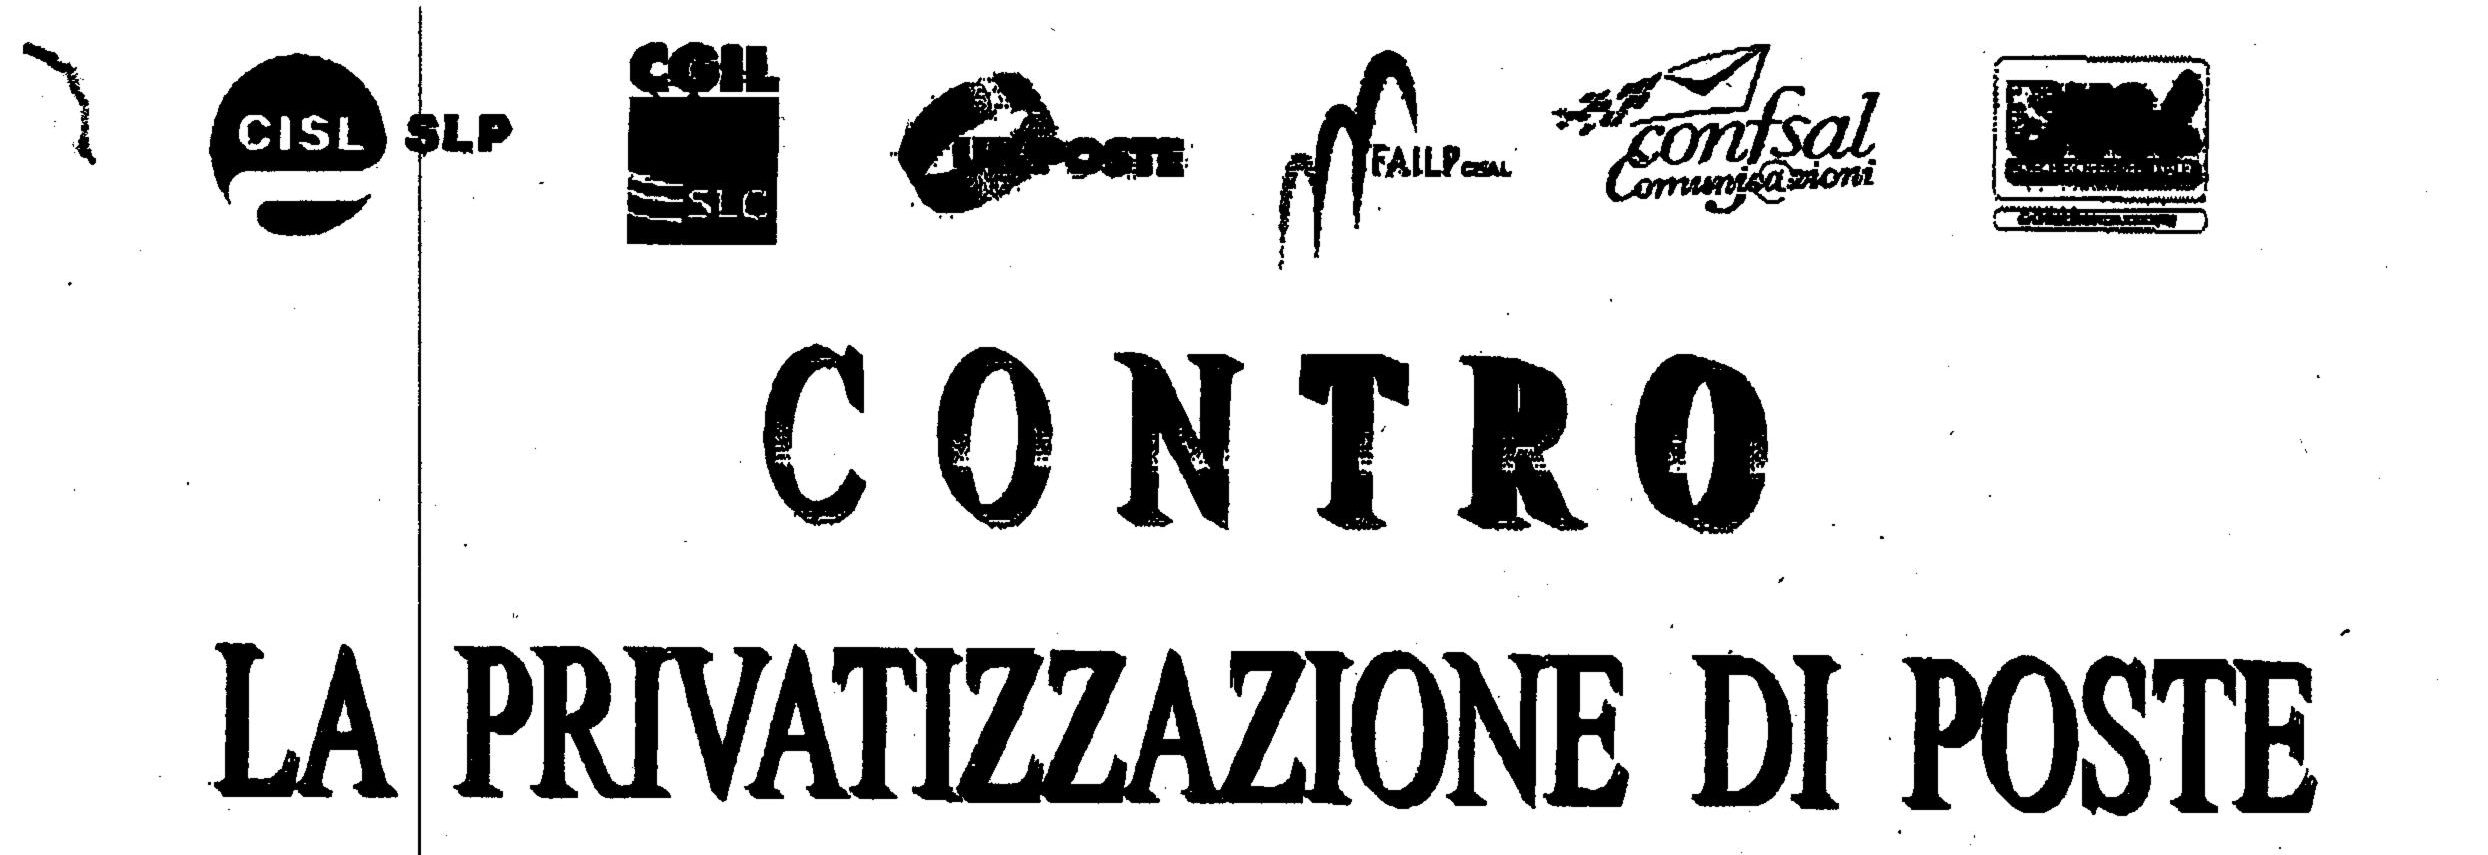 Privatizzazione Poste Italiane, la Cgil scende in piazza